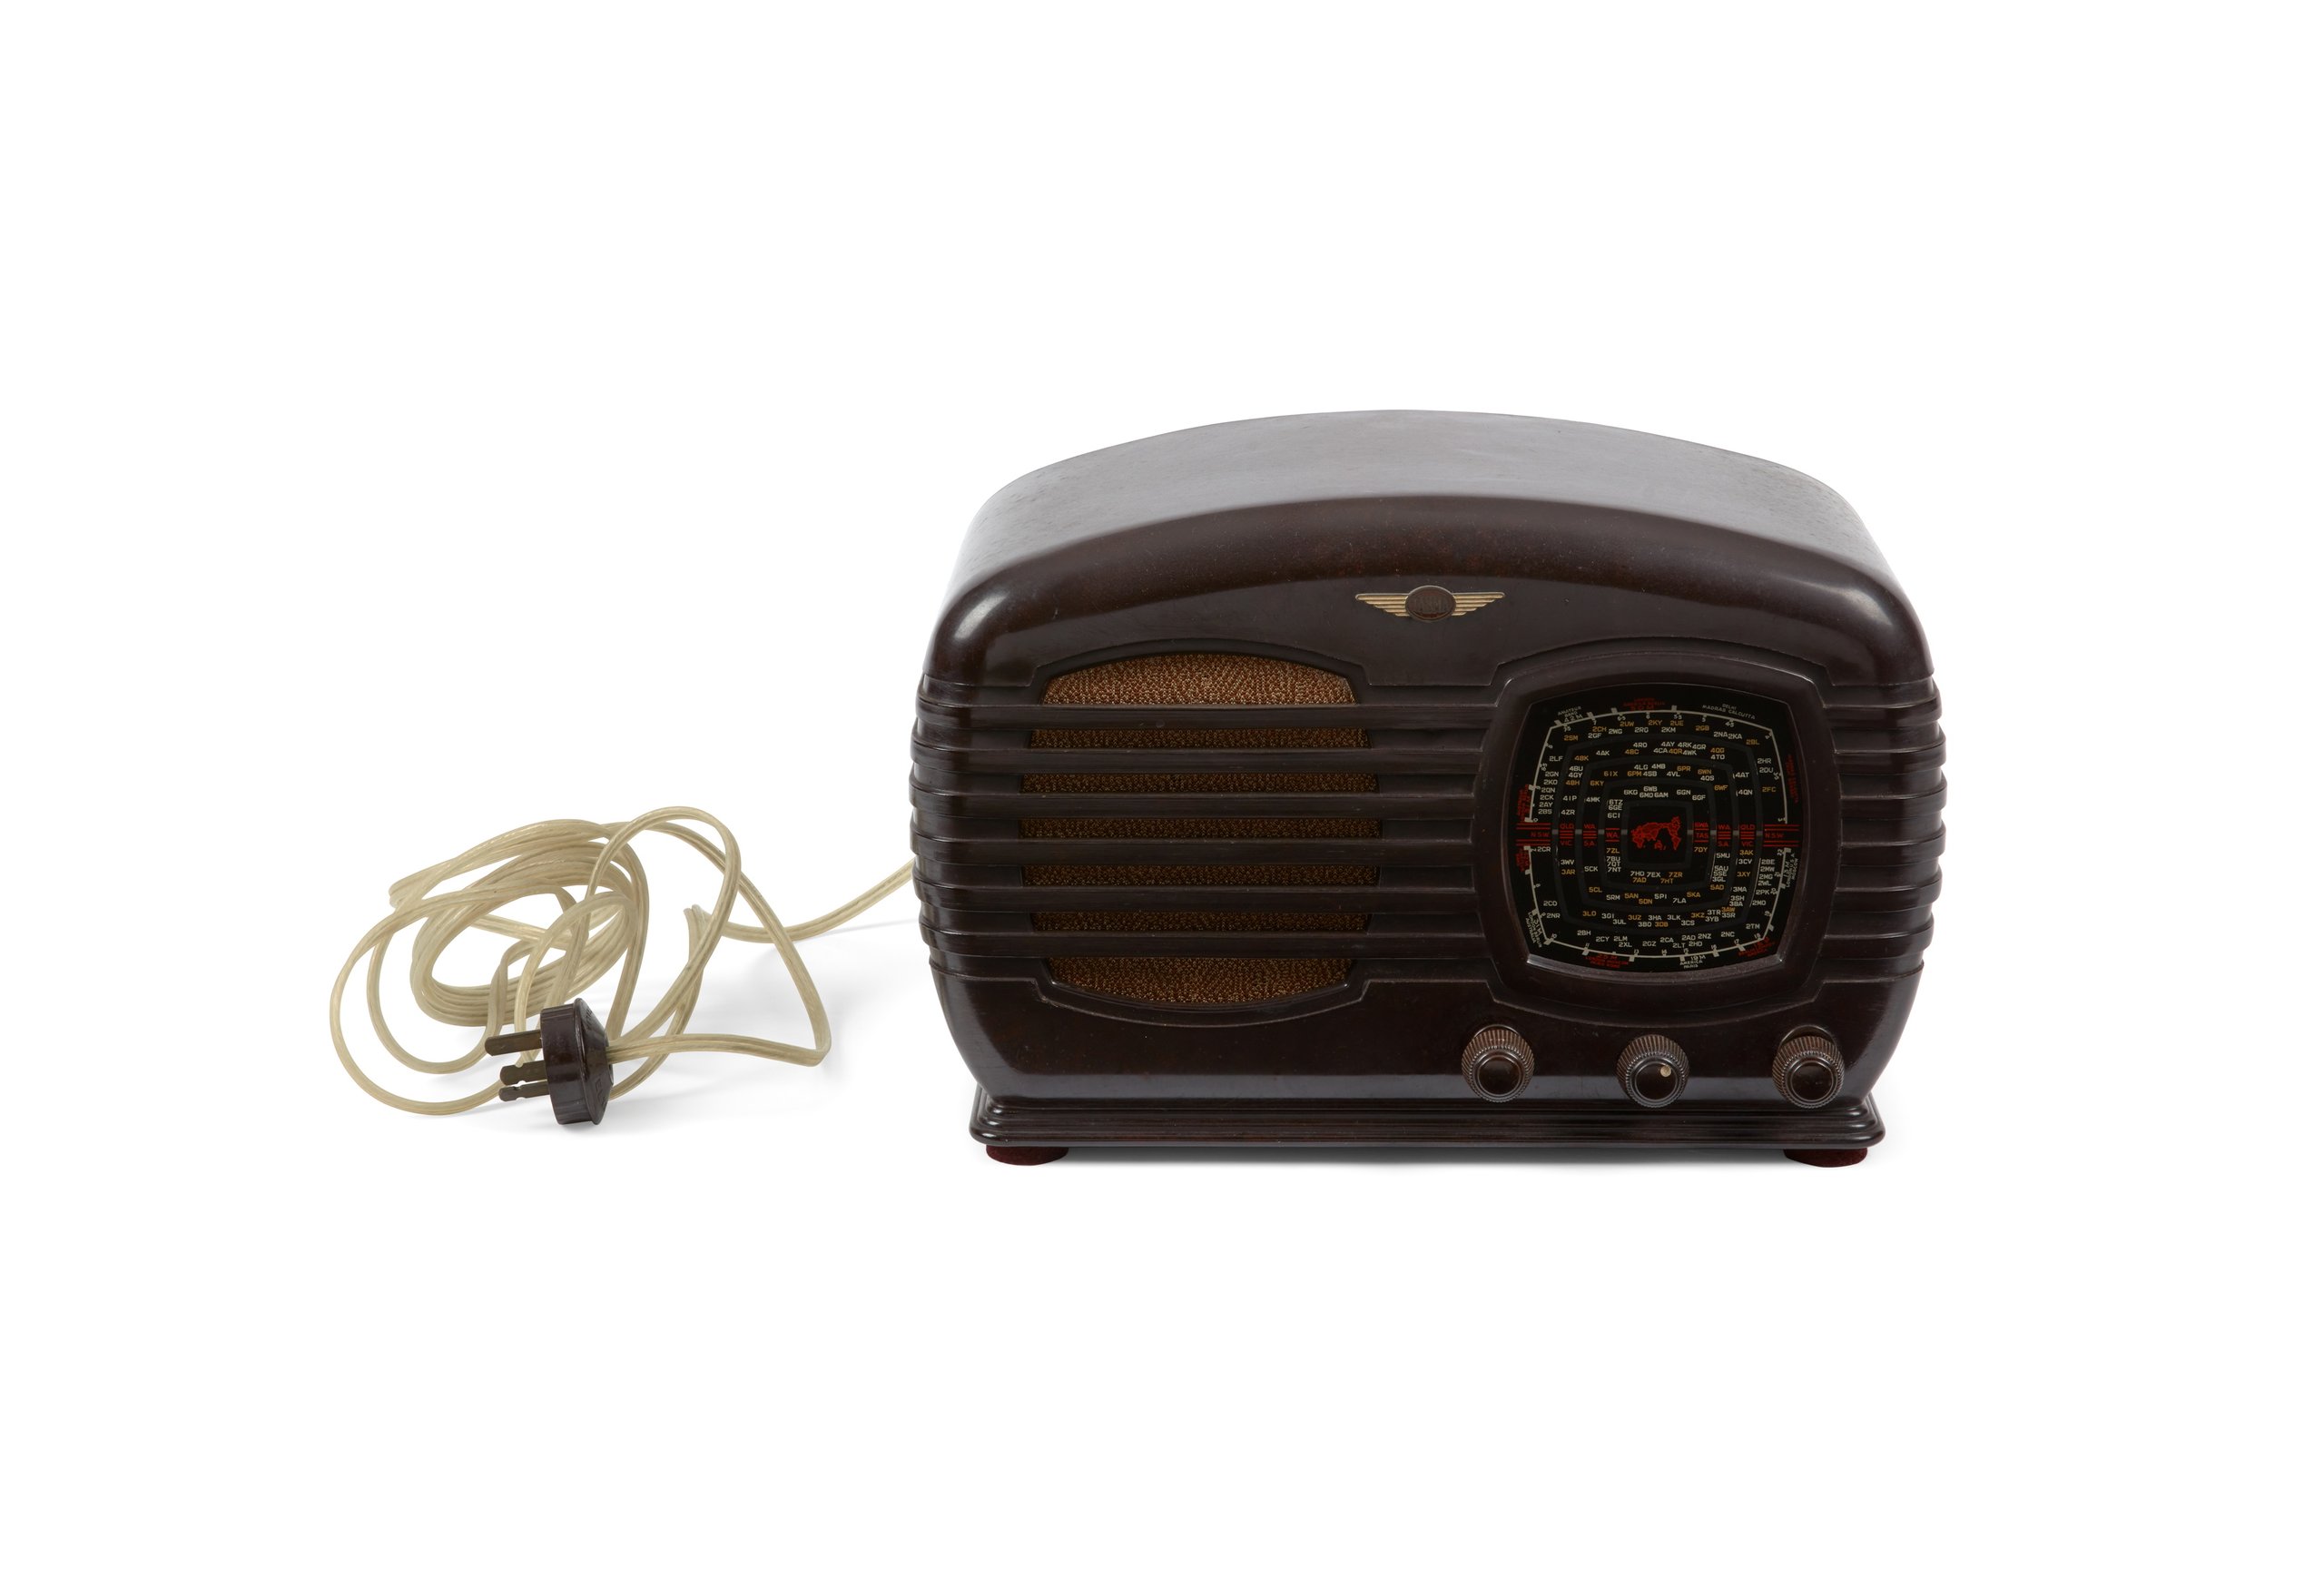 Tasma mantle radio